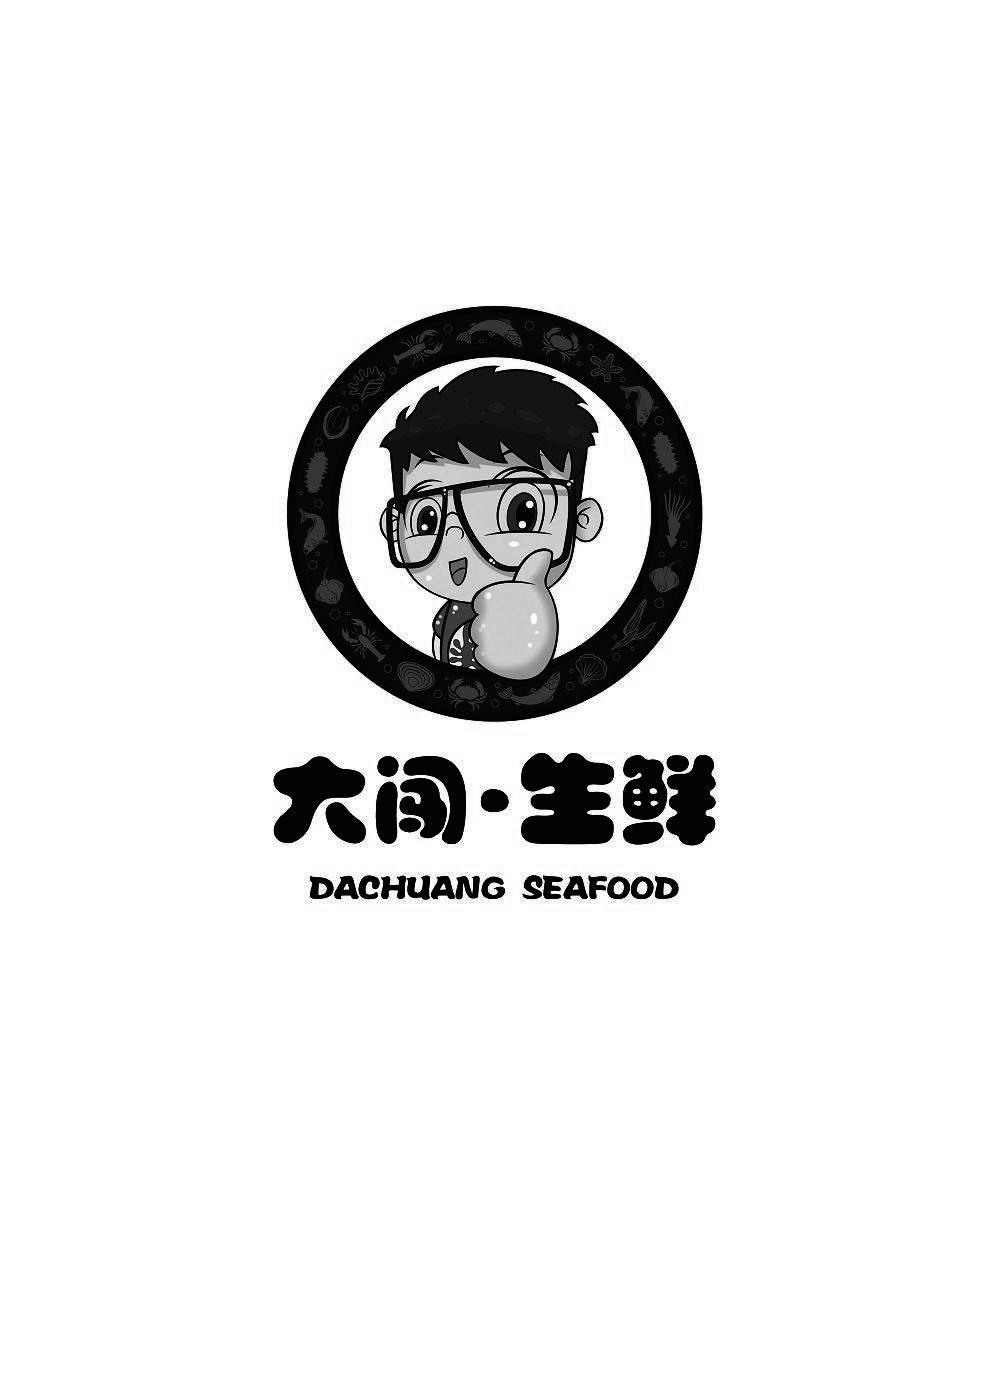 国外生鲜logo图片